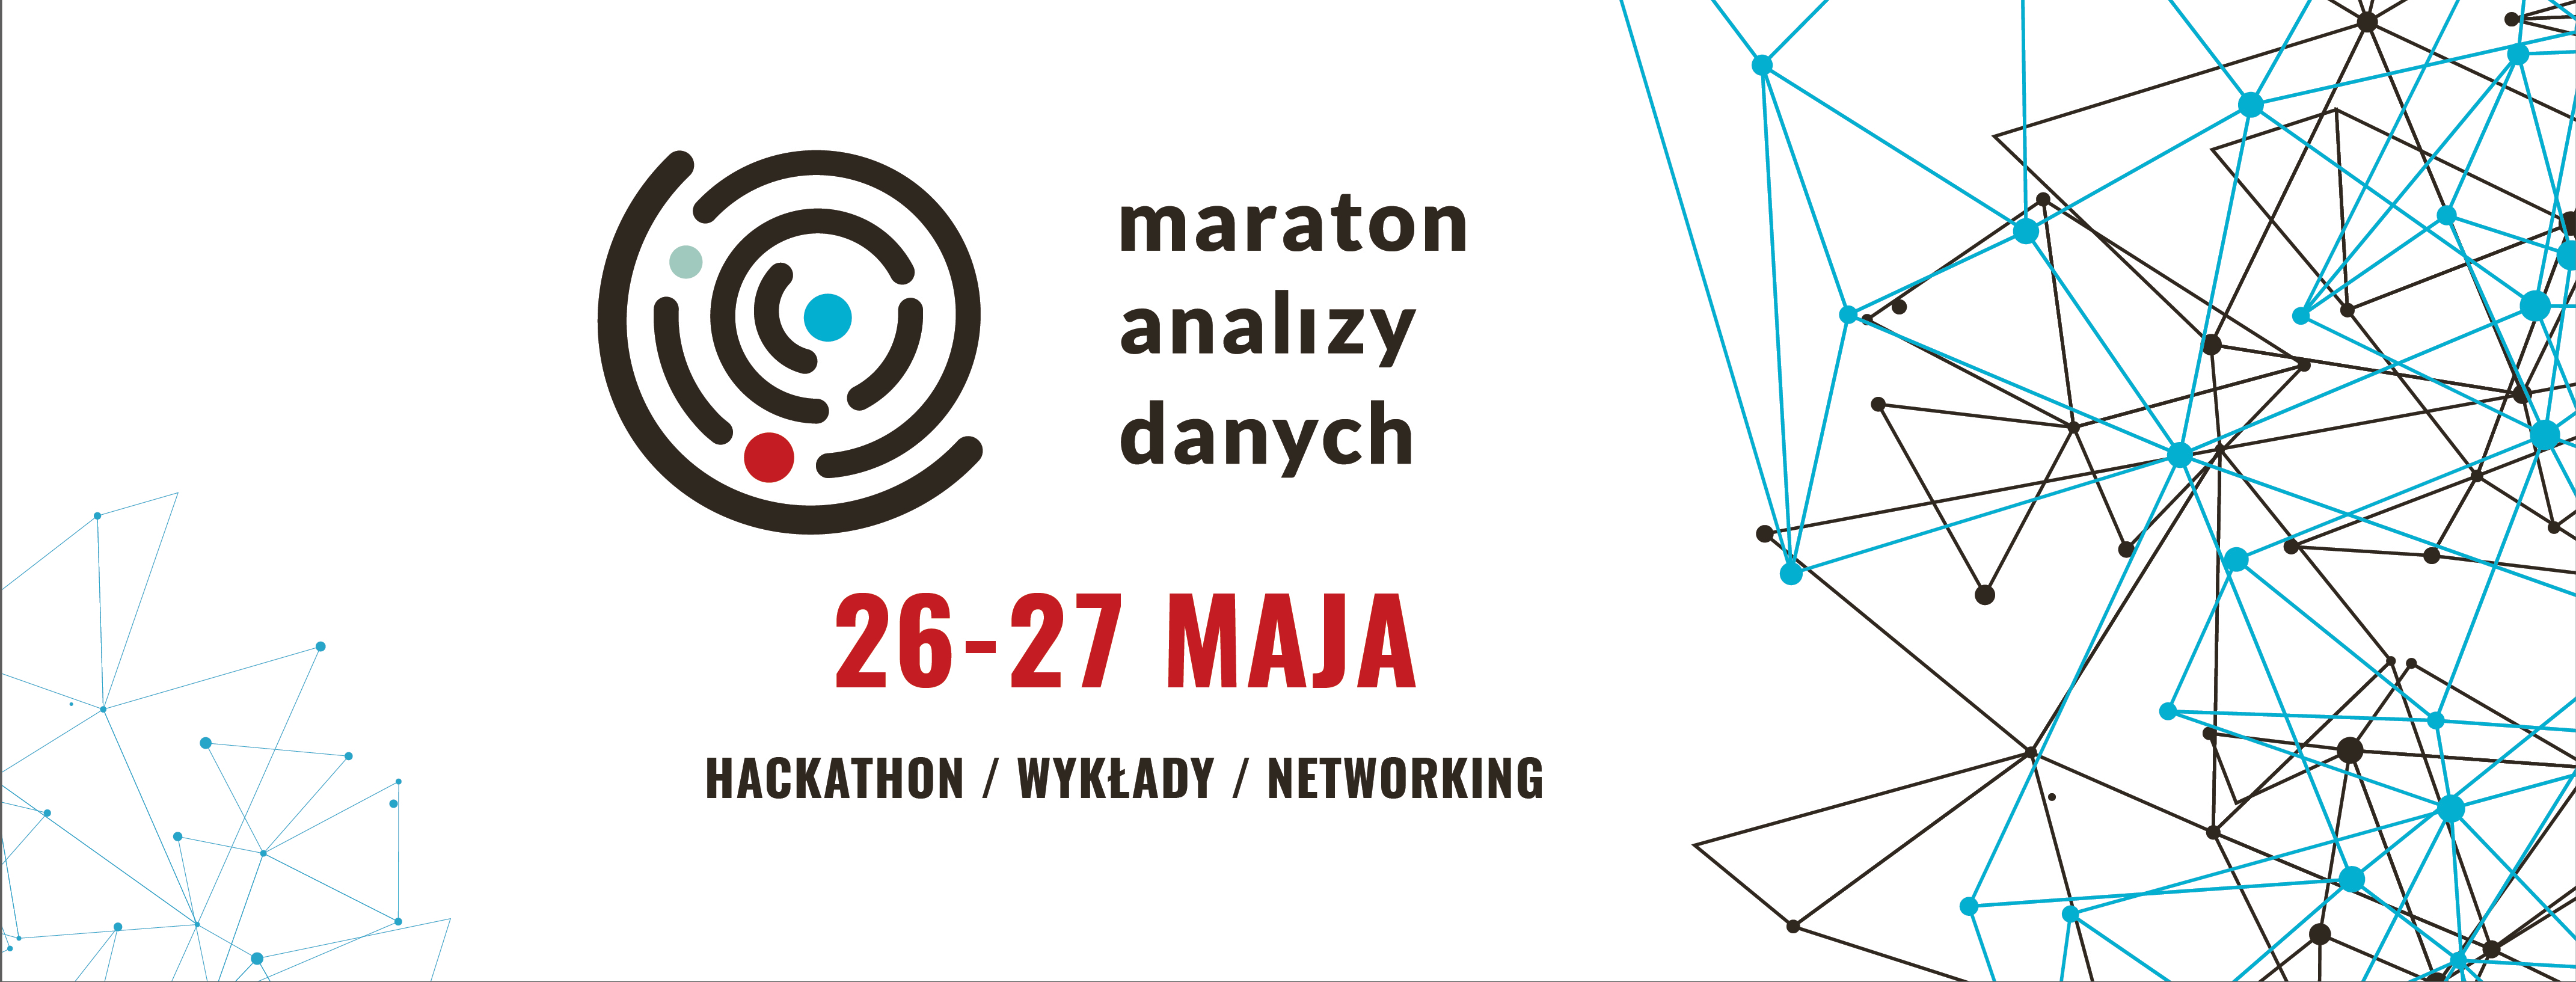 maraton-analizy-danych-2018